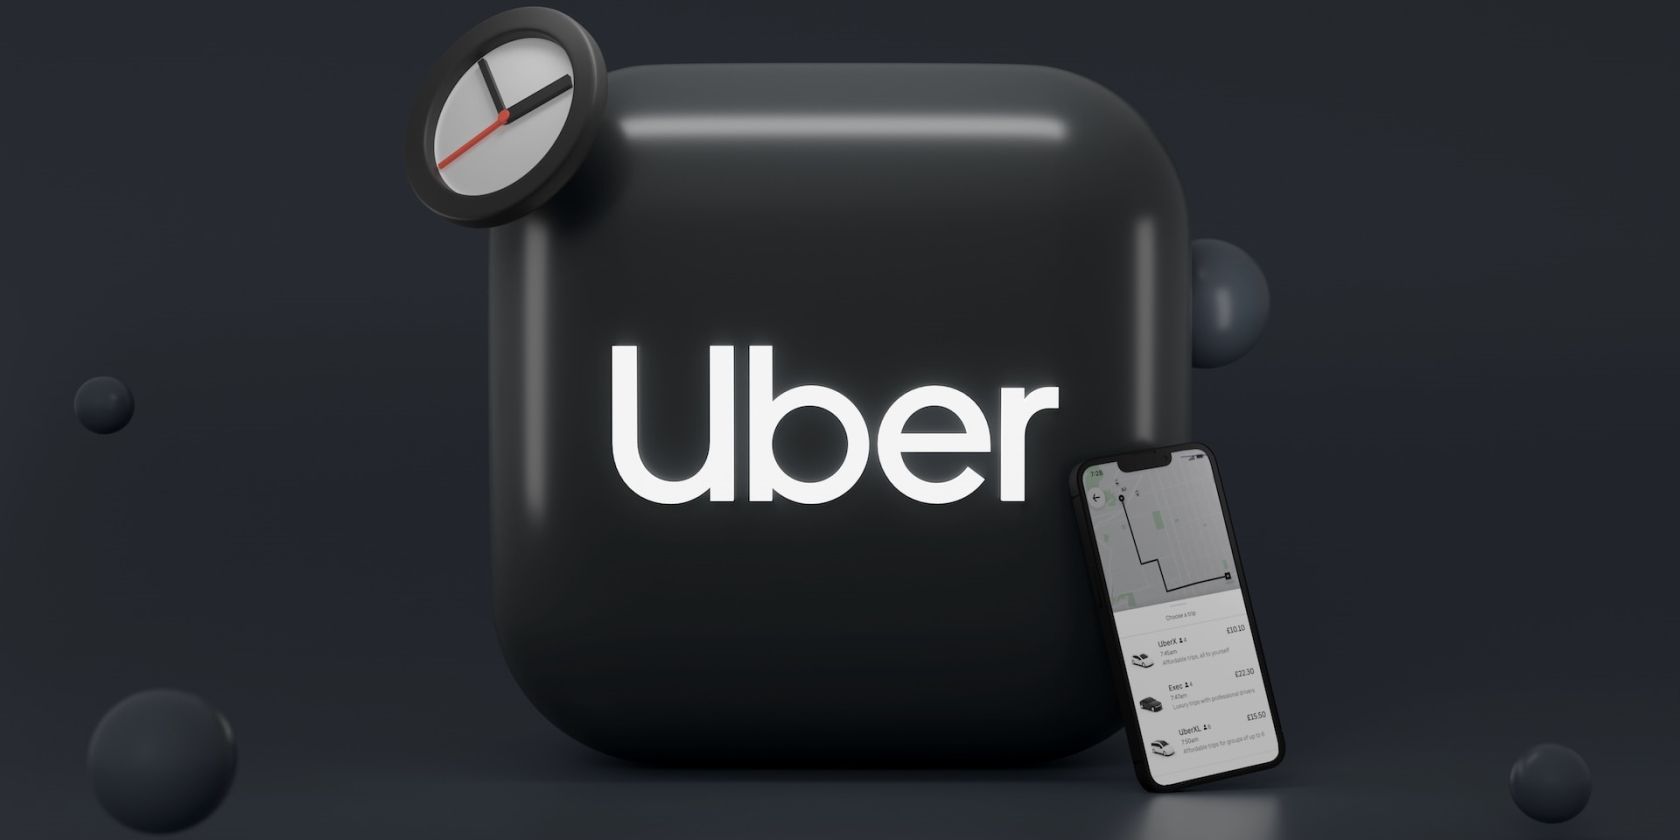 Uber logo next to an iPhone